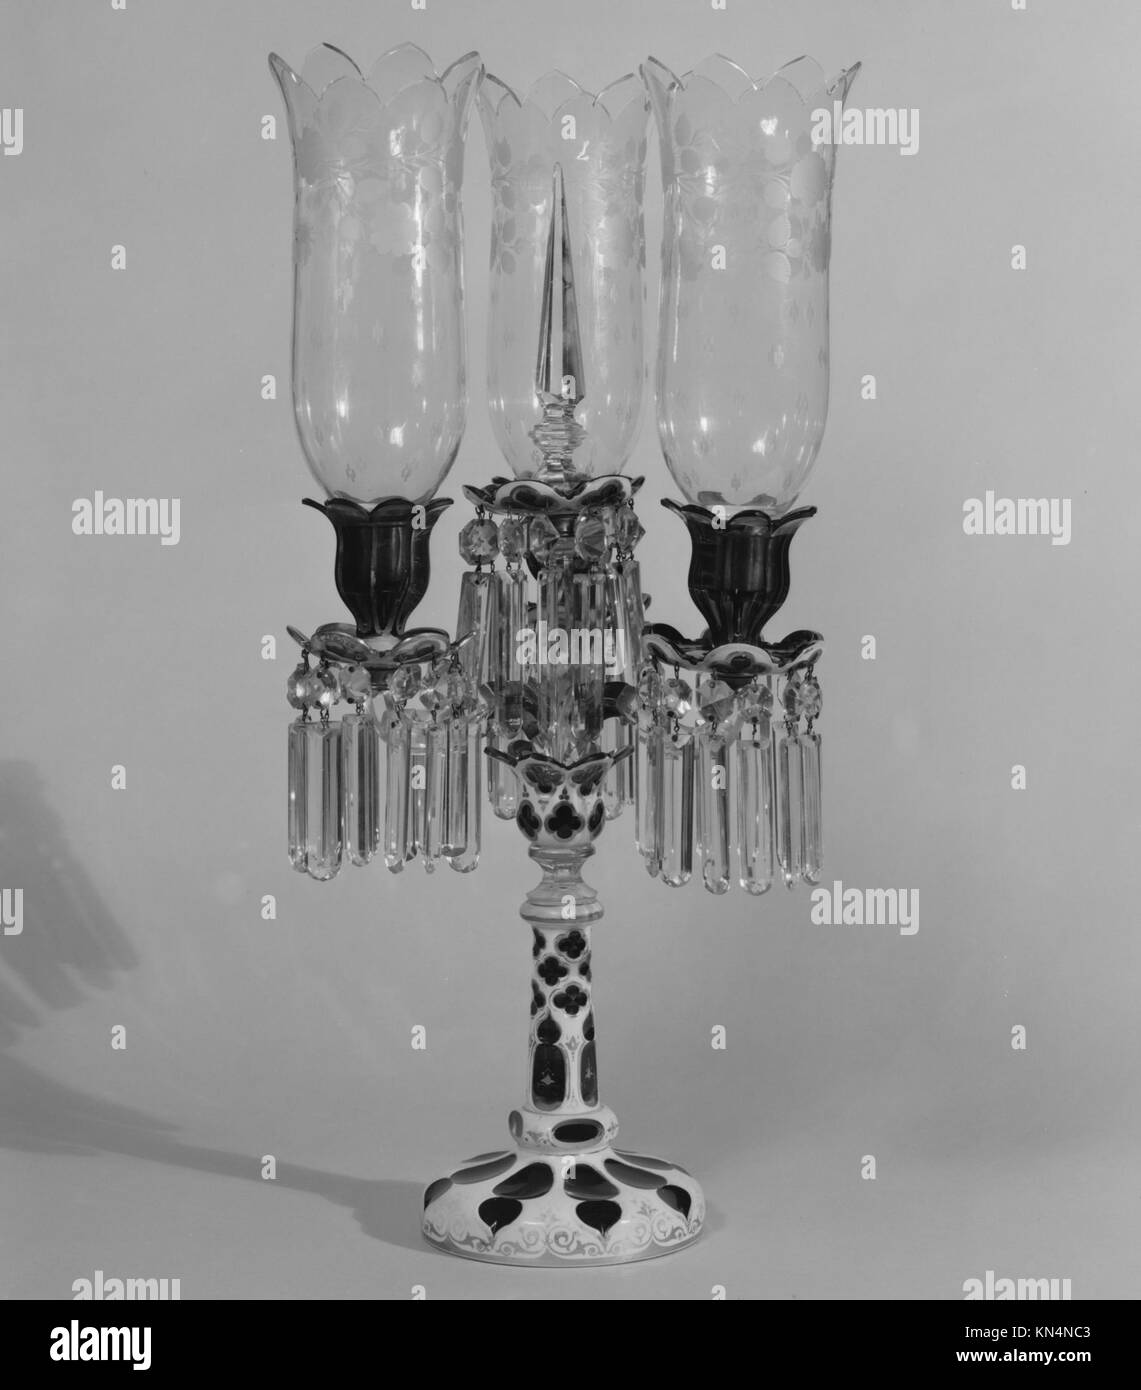 Candelabrum MET 156531 1117 amerikanisch oder französisch, candelabrum, ca. 1840, mundgeblasenes Glas, H. 27 7/8 Zoll (70.8 cm). Das Metropolitan Museum of Art, New York. Geschenk von Frau Screven Lorillard, 1952 (53.179.17a?o) Stockfoto